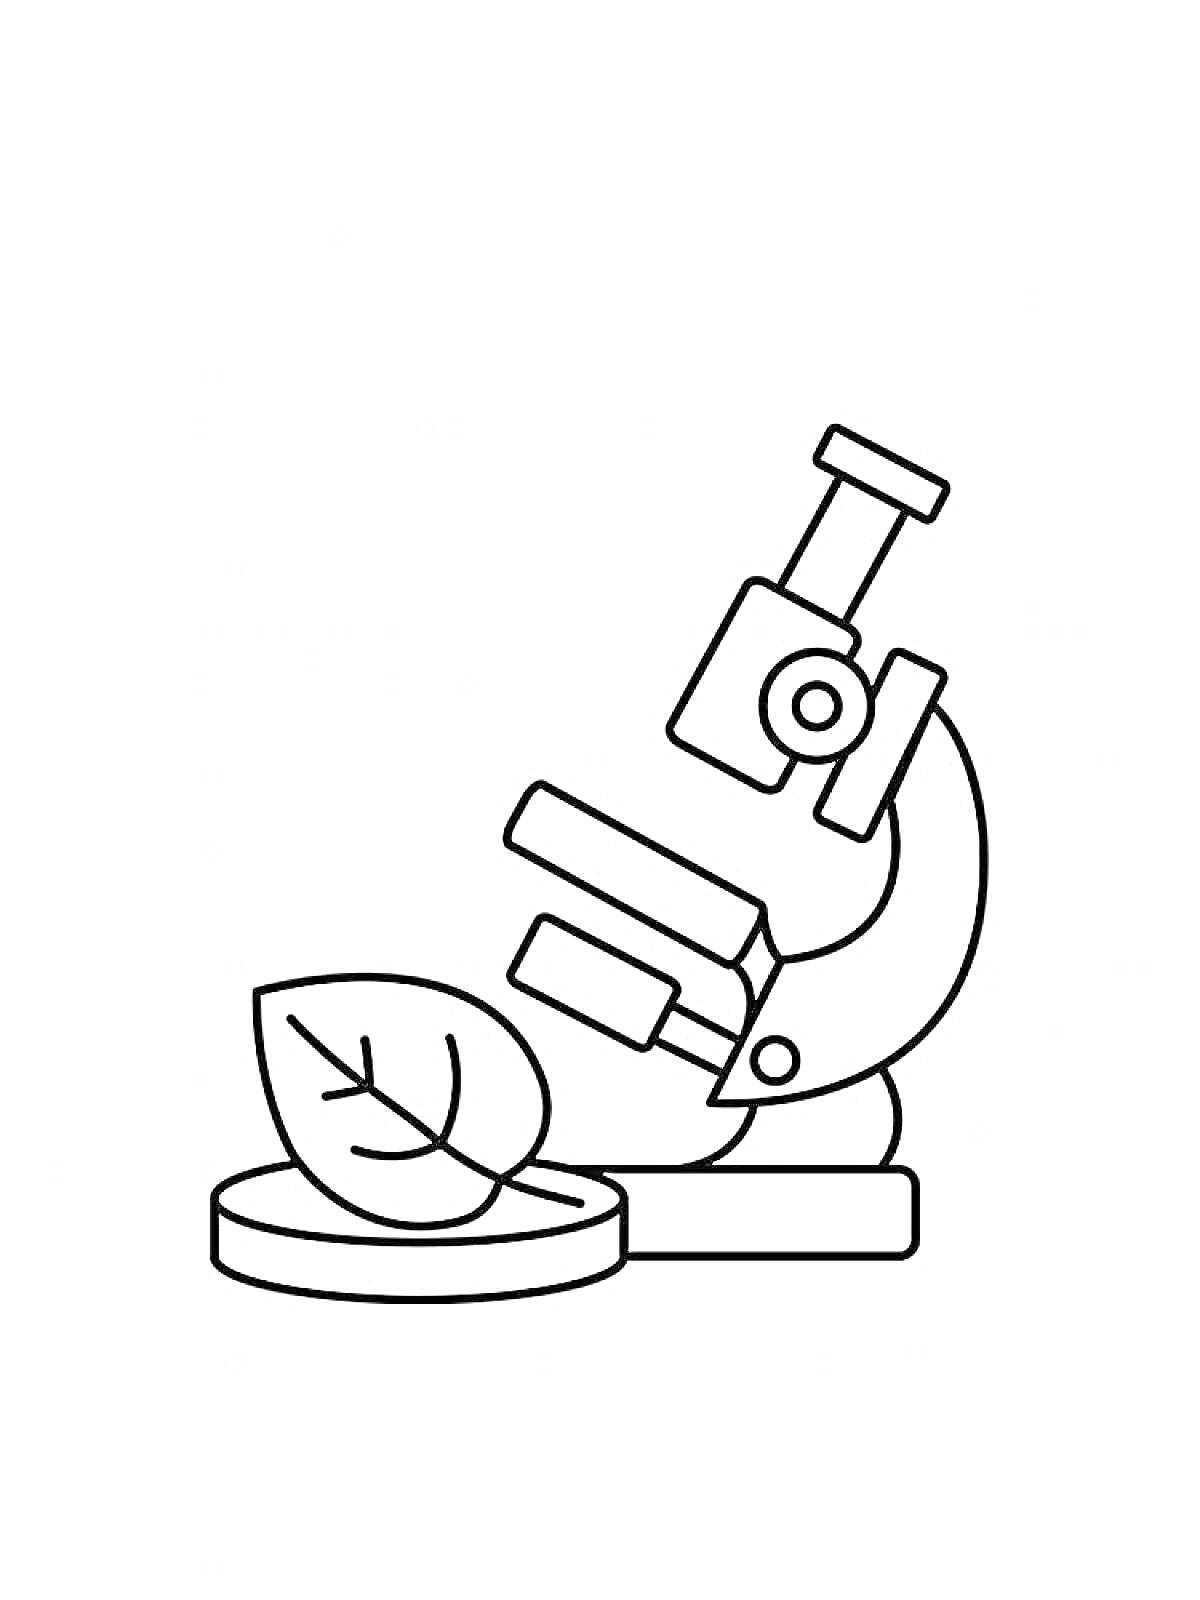 Раскраска Микроскоп с листом на предметном стекле